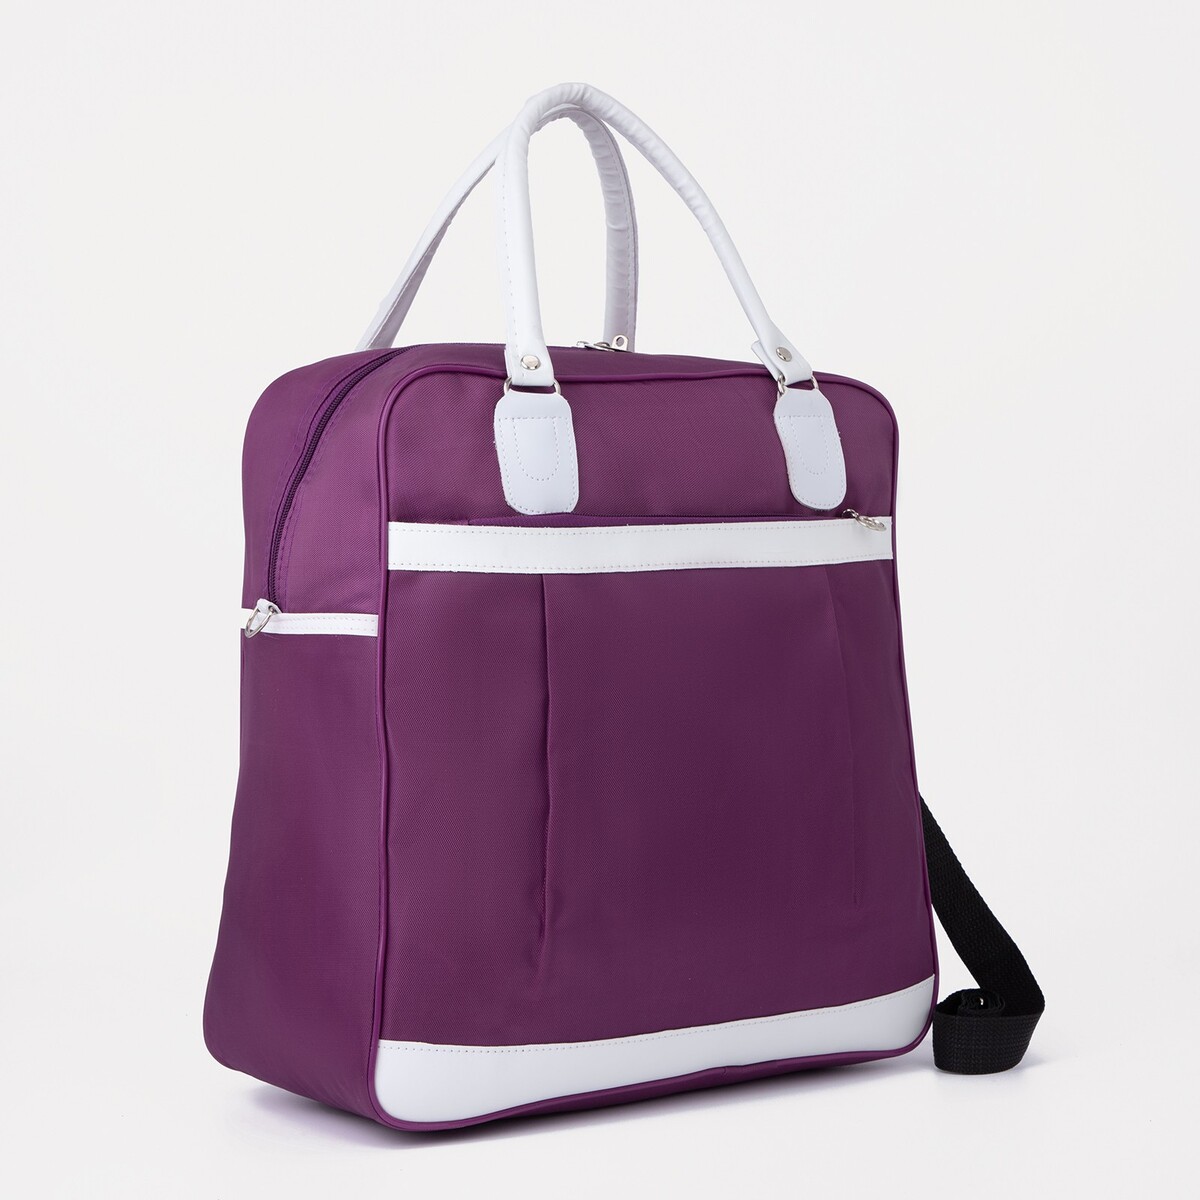 Сумка дорожная на молнии, наружный карман, держатель для чемодана, цвет фиолетовый/белый сменный блок для швабры микрофибра лапша эластичный карман фиолетовый умничка kd r10